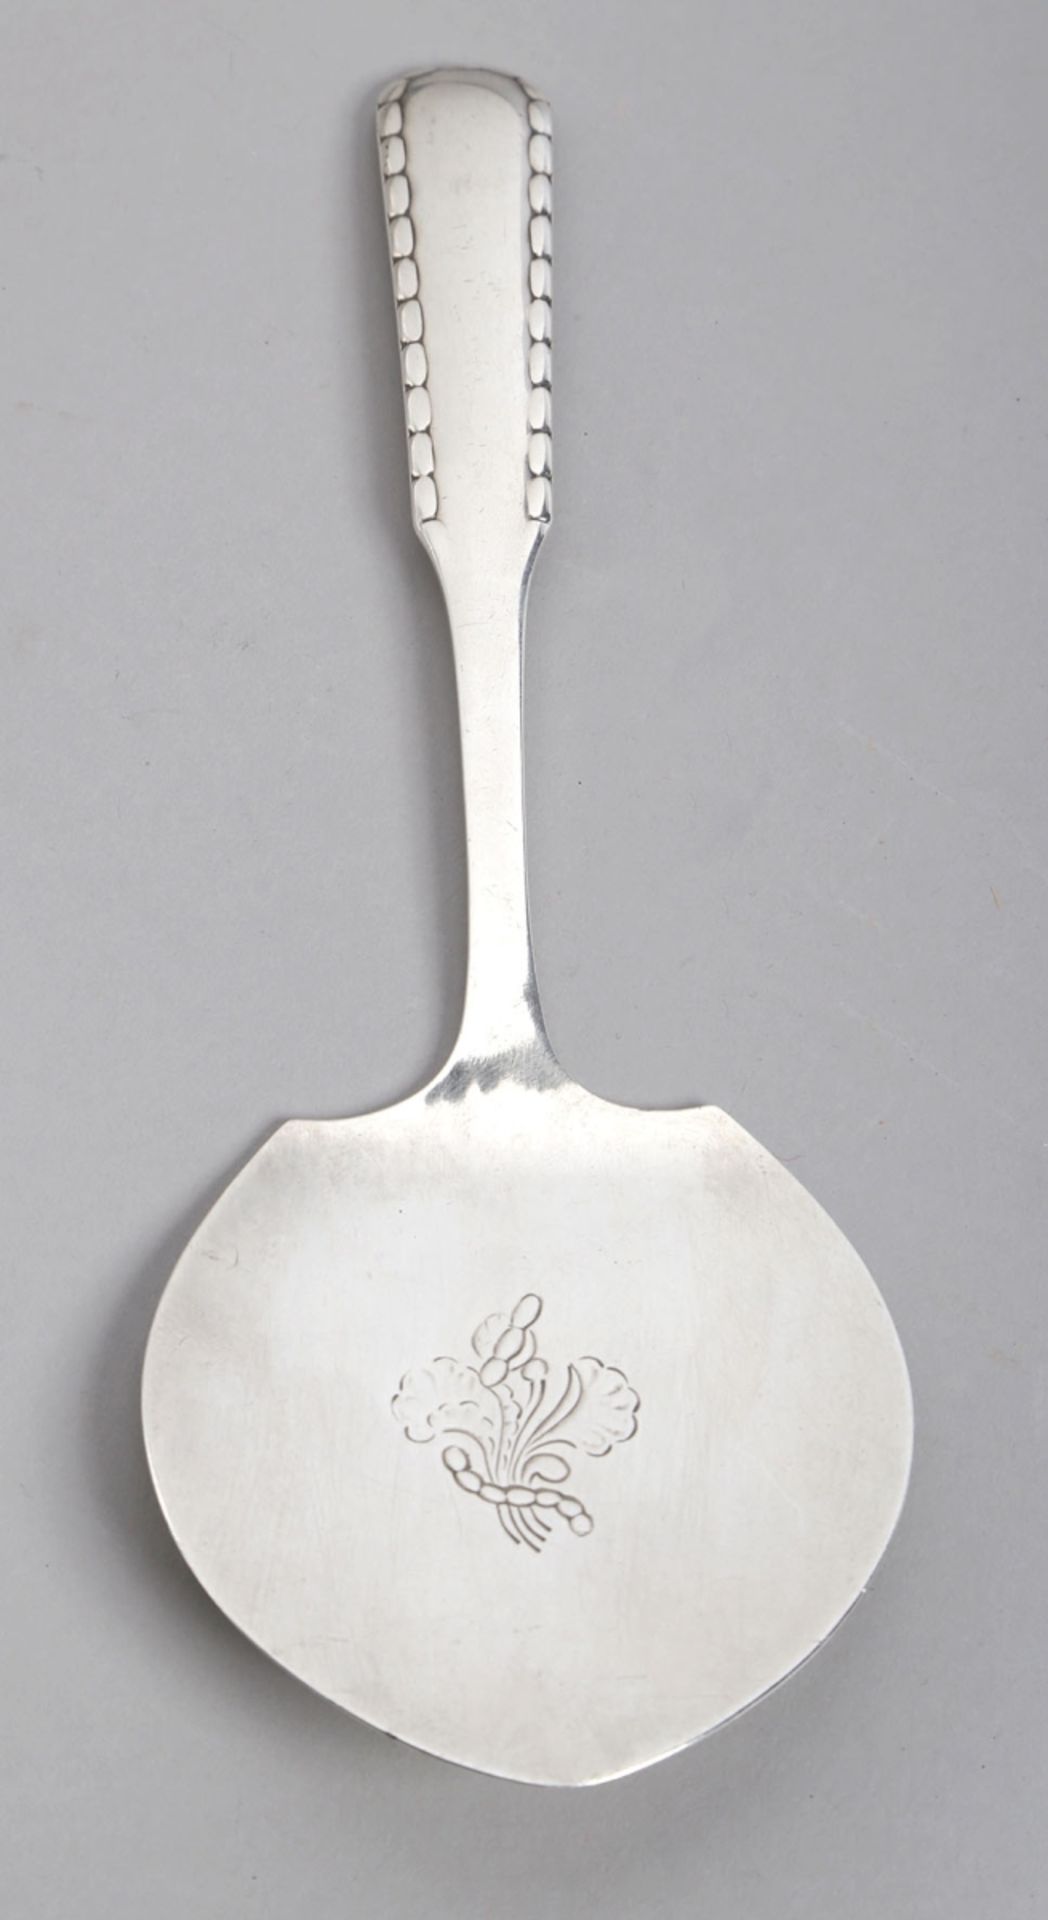 Pastetenheber, Georg Jensen, Dänemark, 1923, Silber 830, stiltypische Form, Griff mitRanddekor,